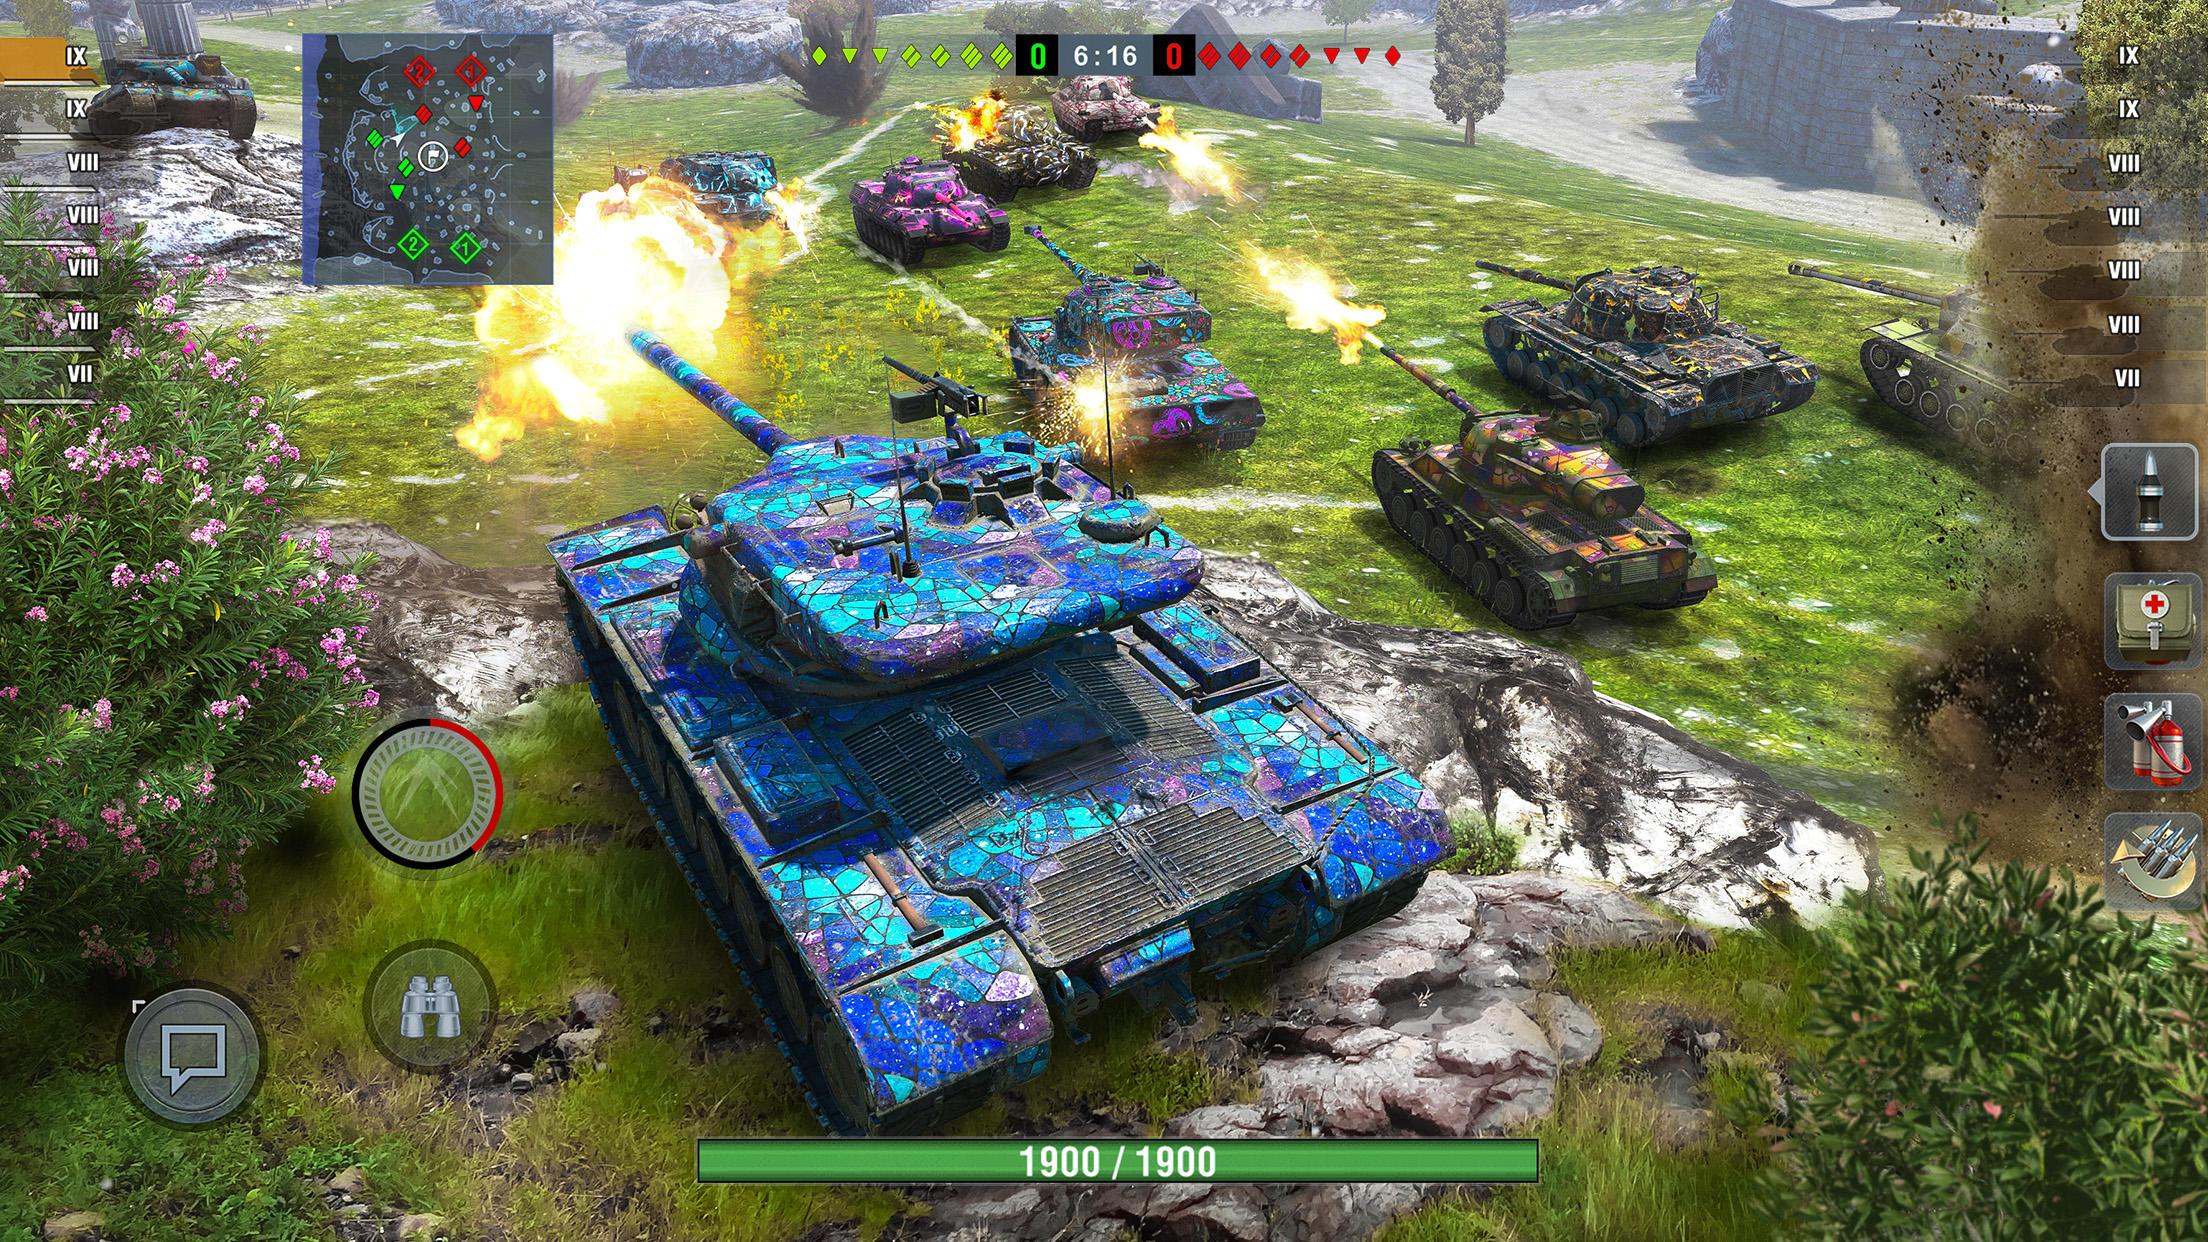 Screenshot 1 of World of Tanks Blitz MMO 10.8.0.438